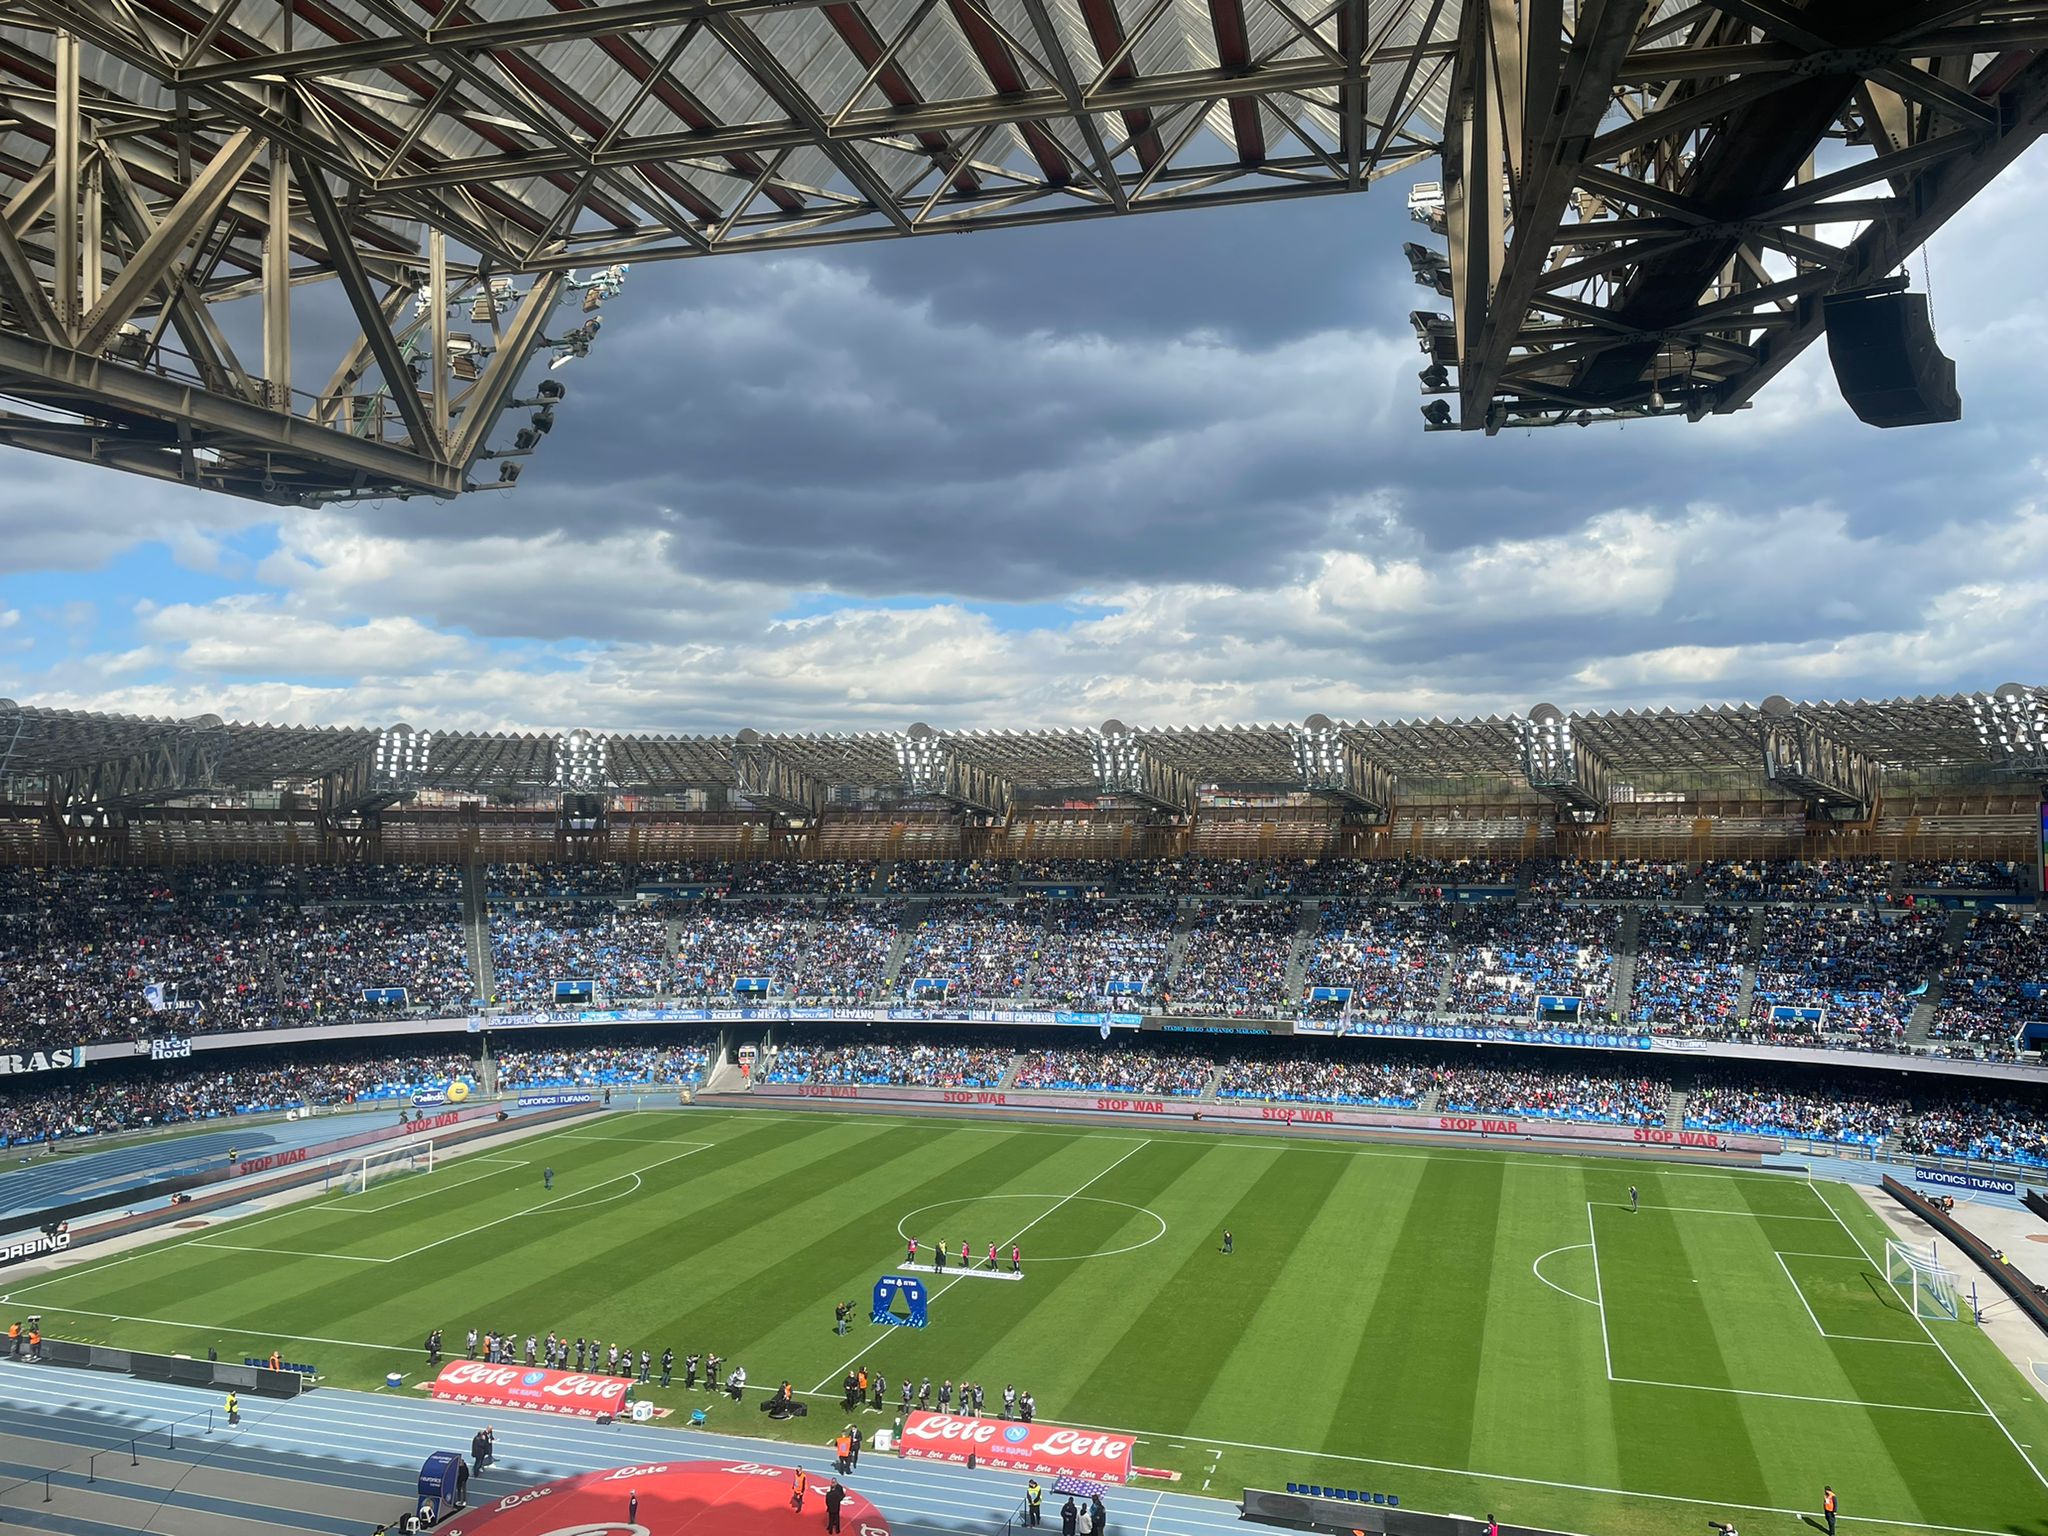 Napoli-Genoa, pochi i tagliandi rimasti per assistere al match